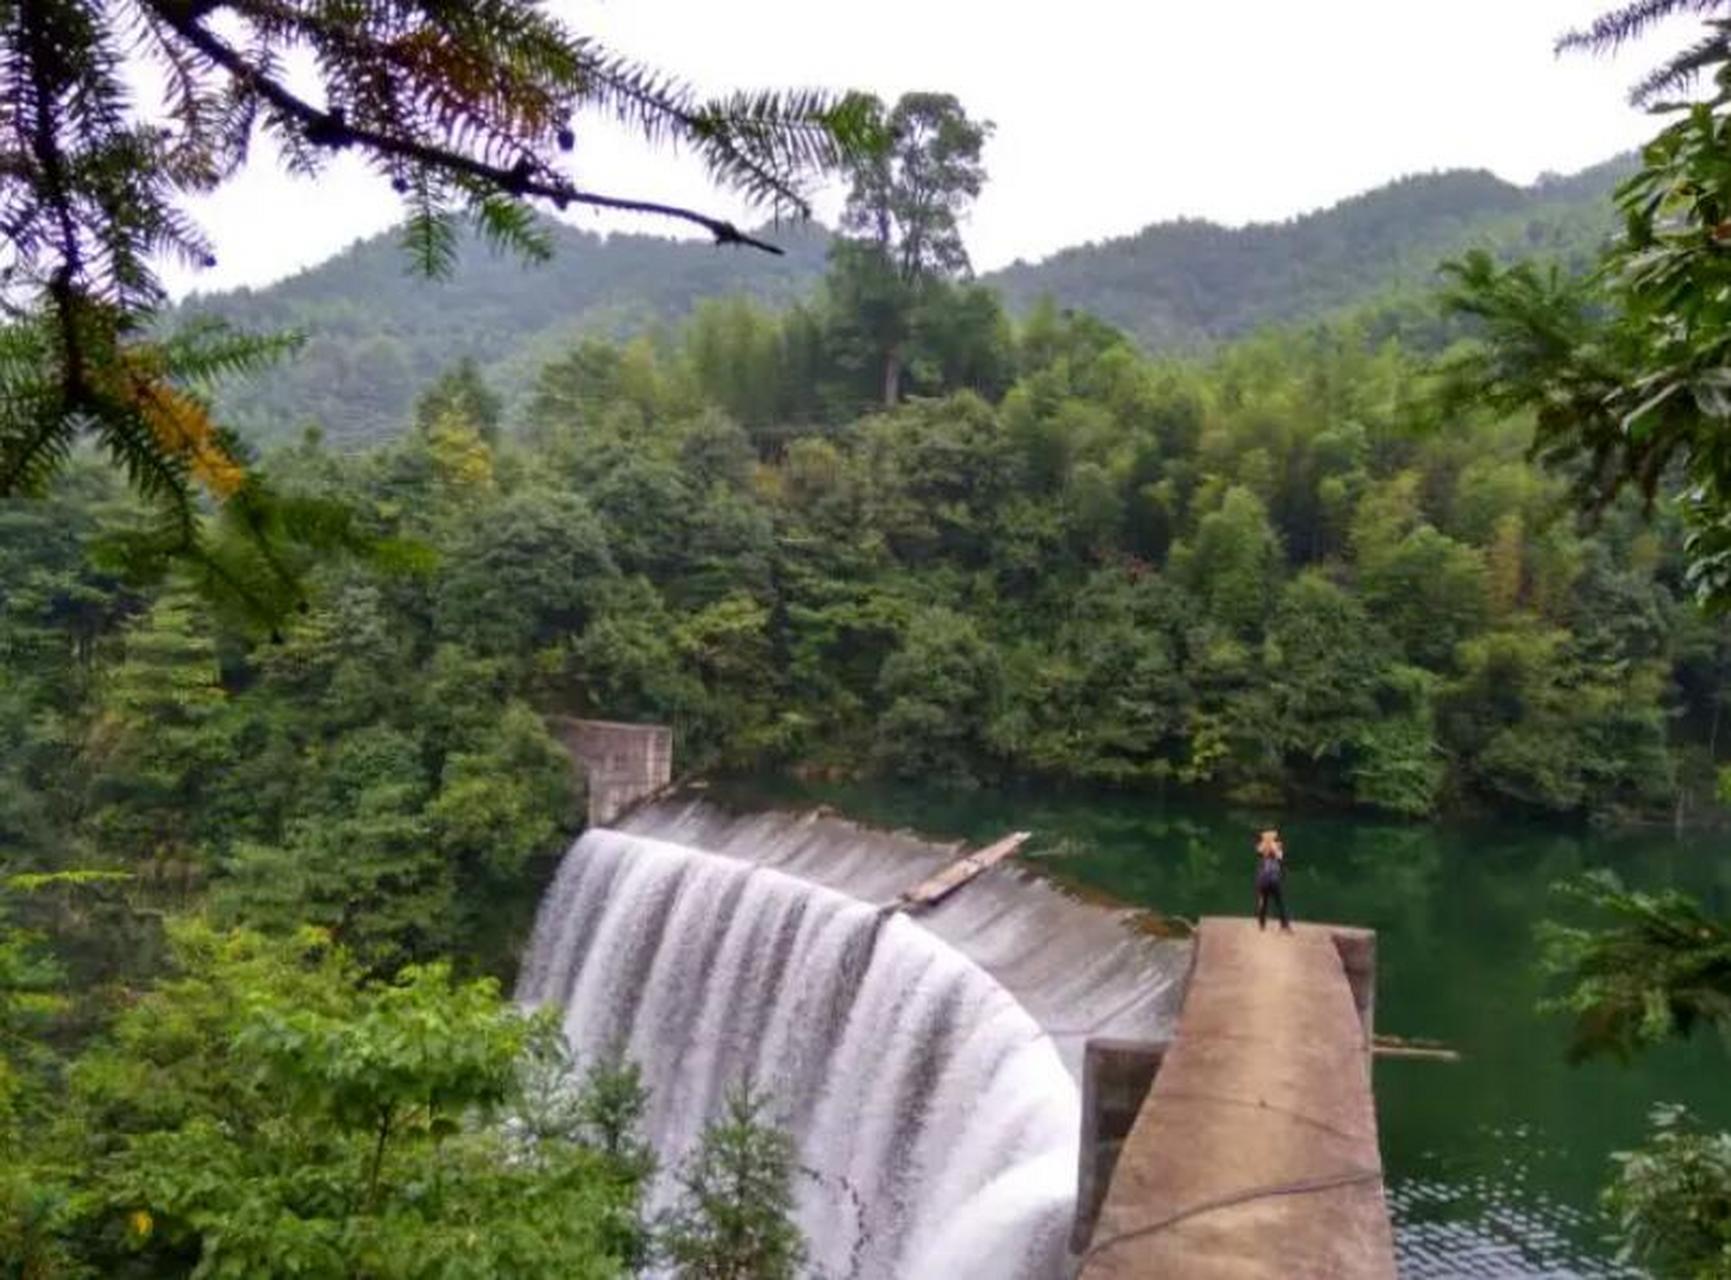 碧湖潭国家森林公园位于江西省萍乡市湘东区,经营面积6838